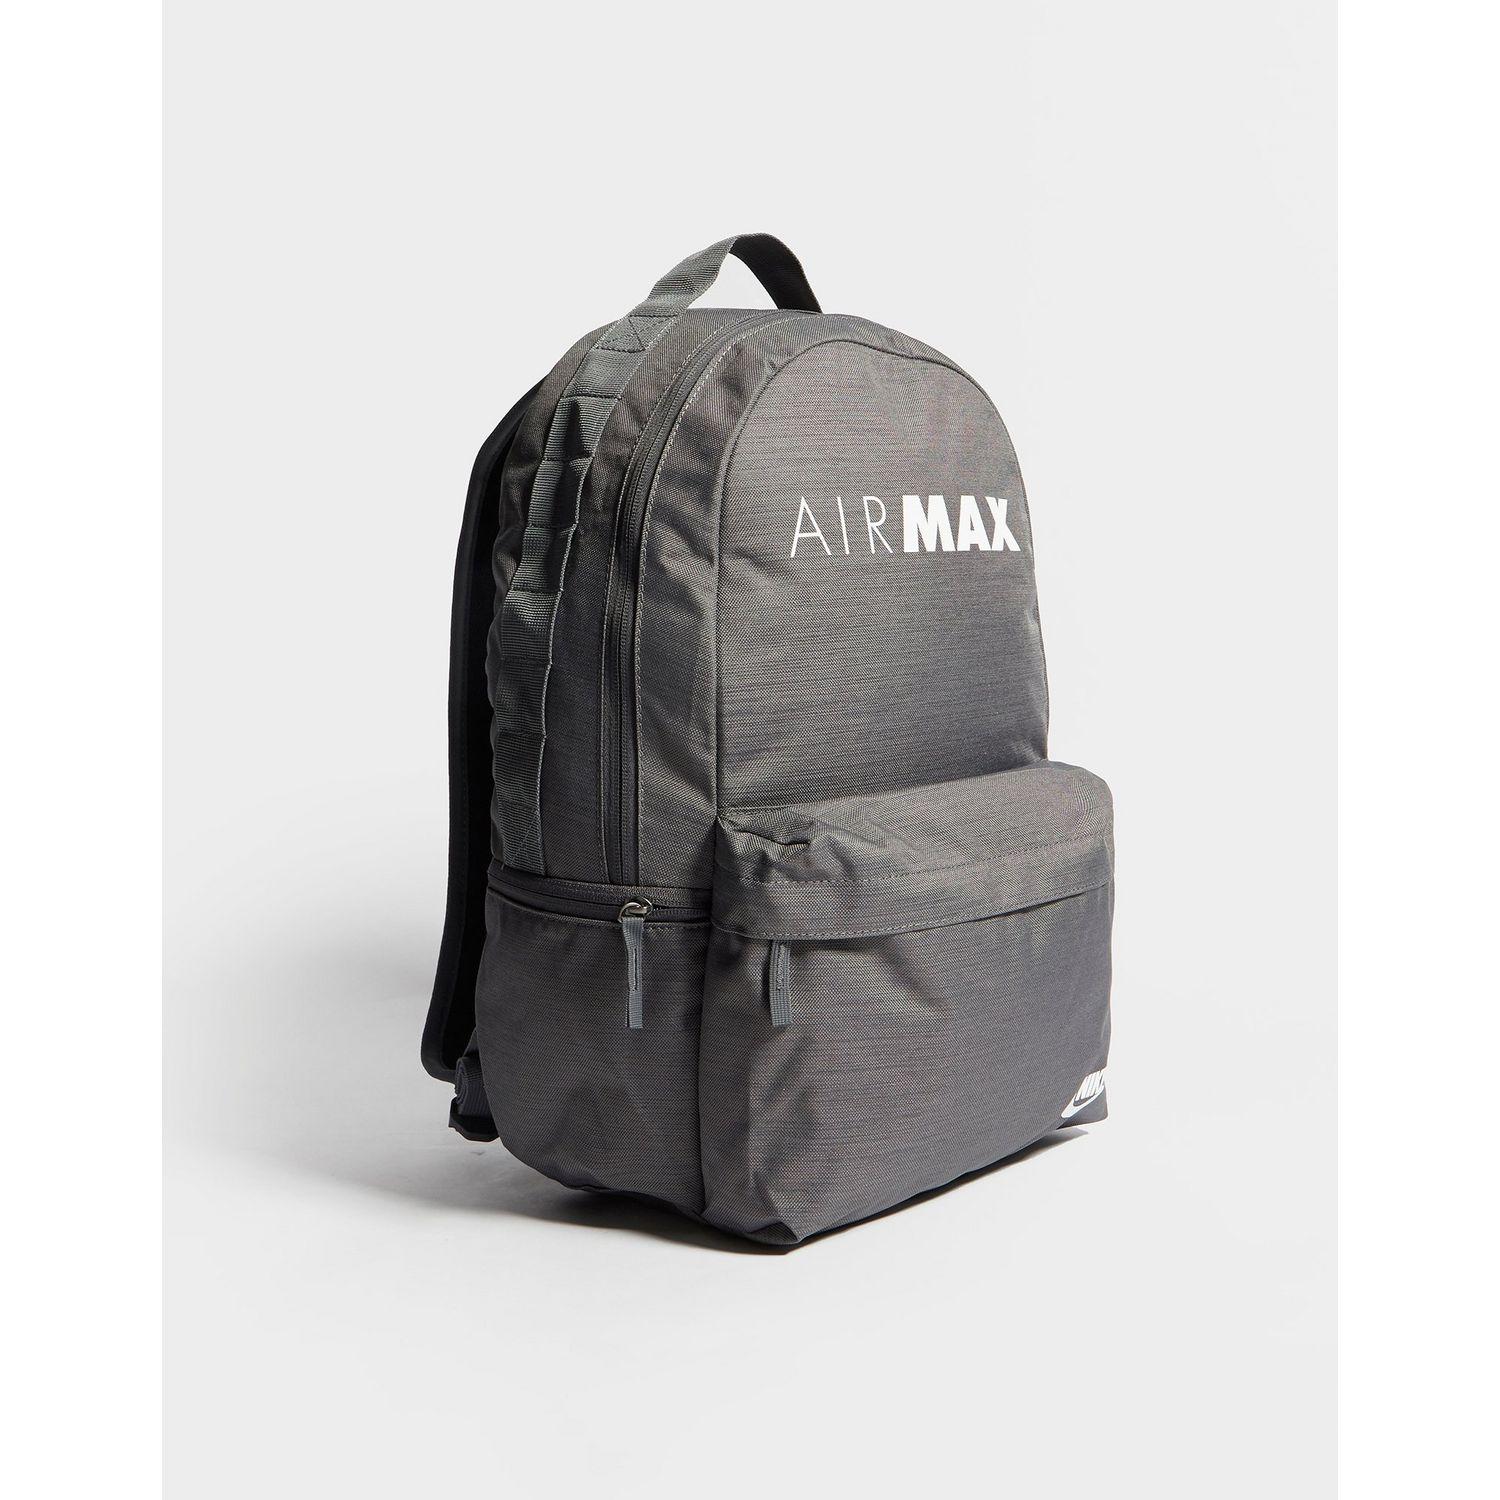 air max backpack nike